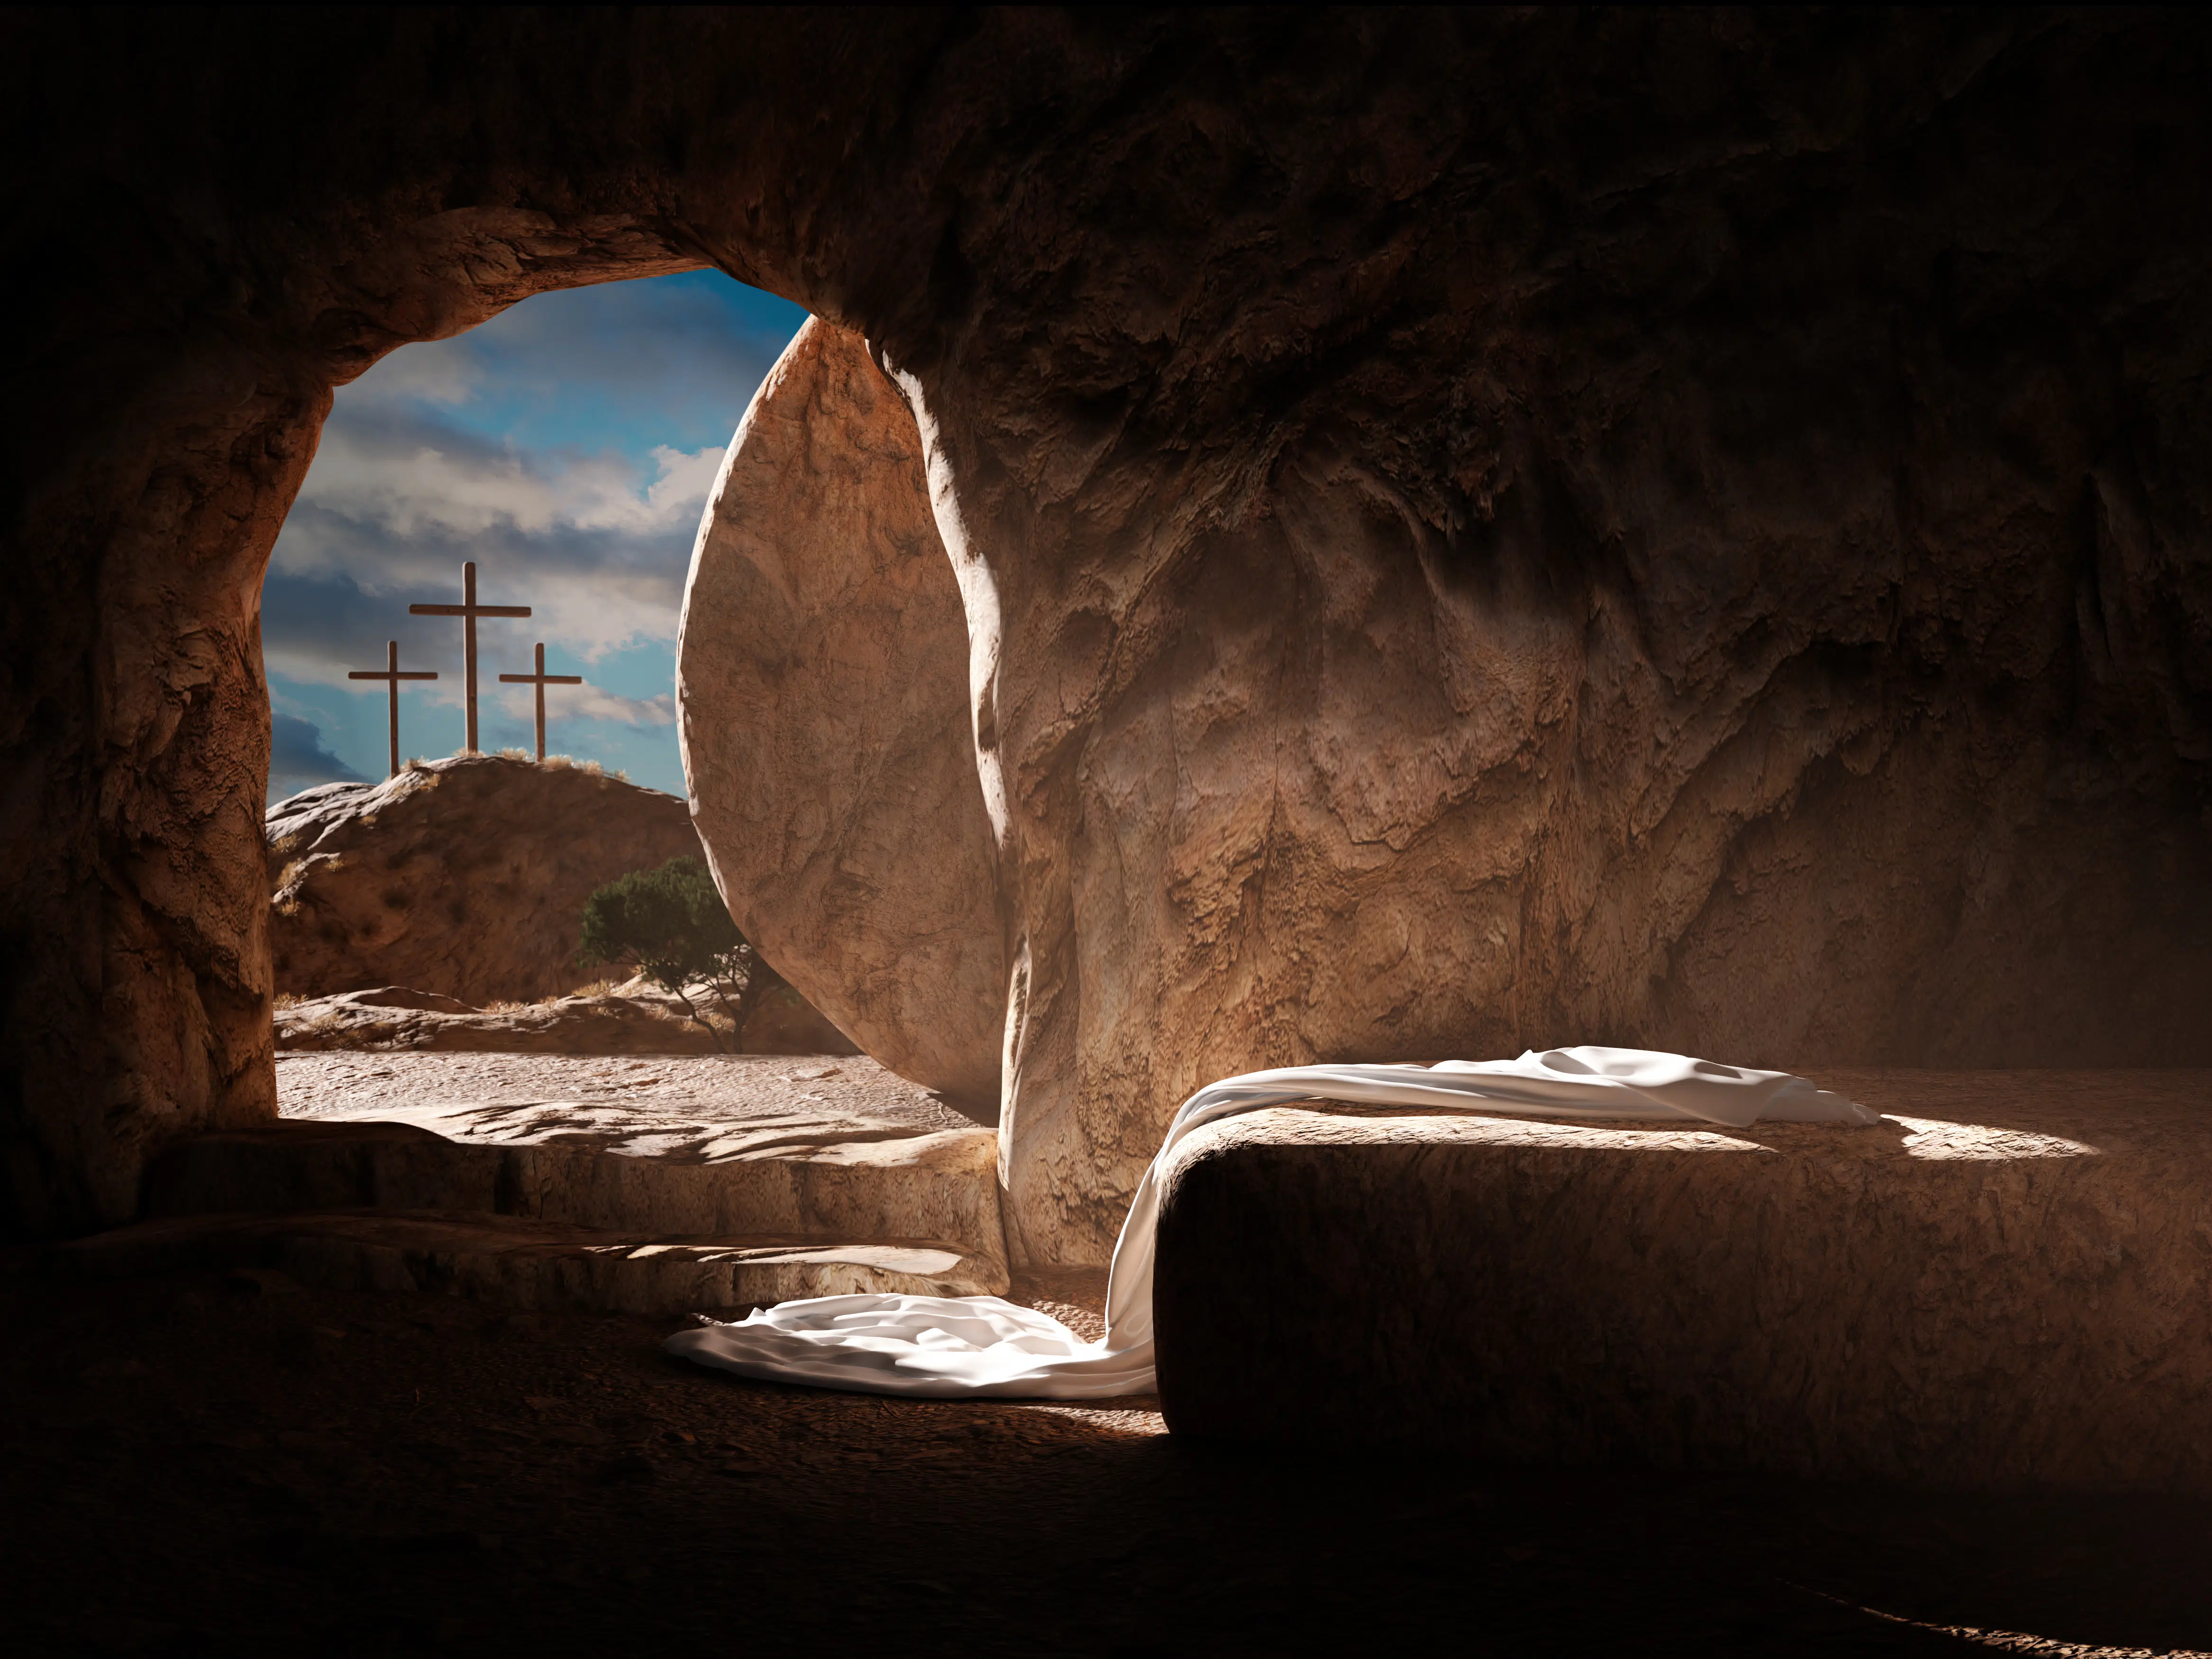 Speaking of resurrection - Arlington Catholic Herald